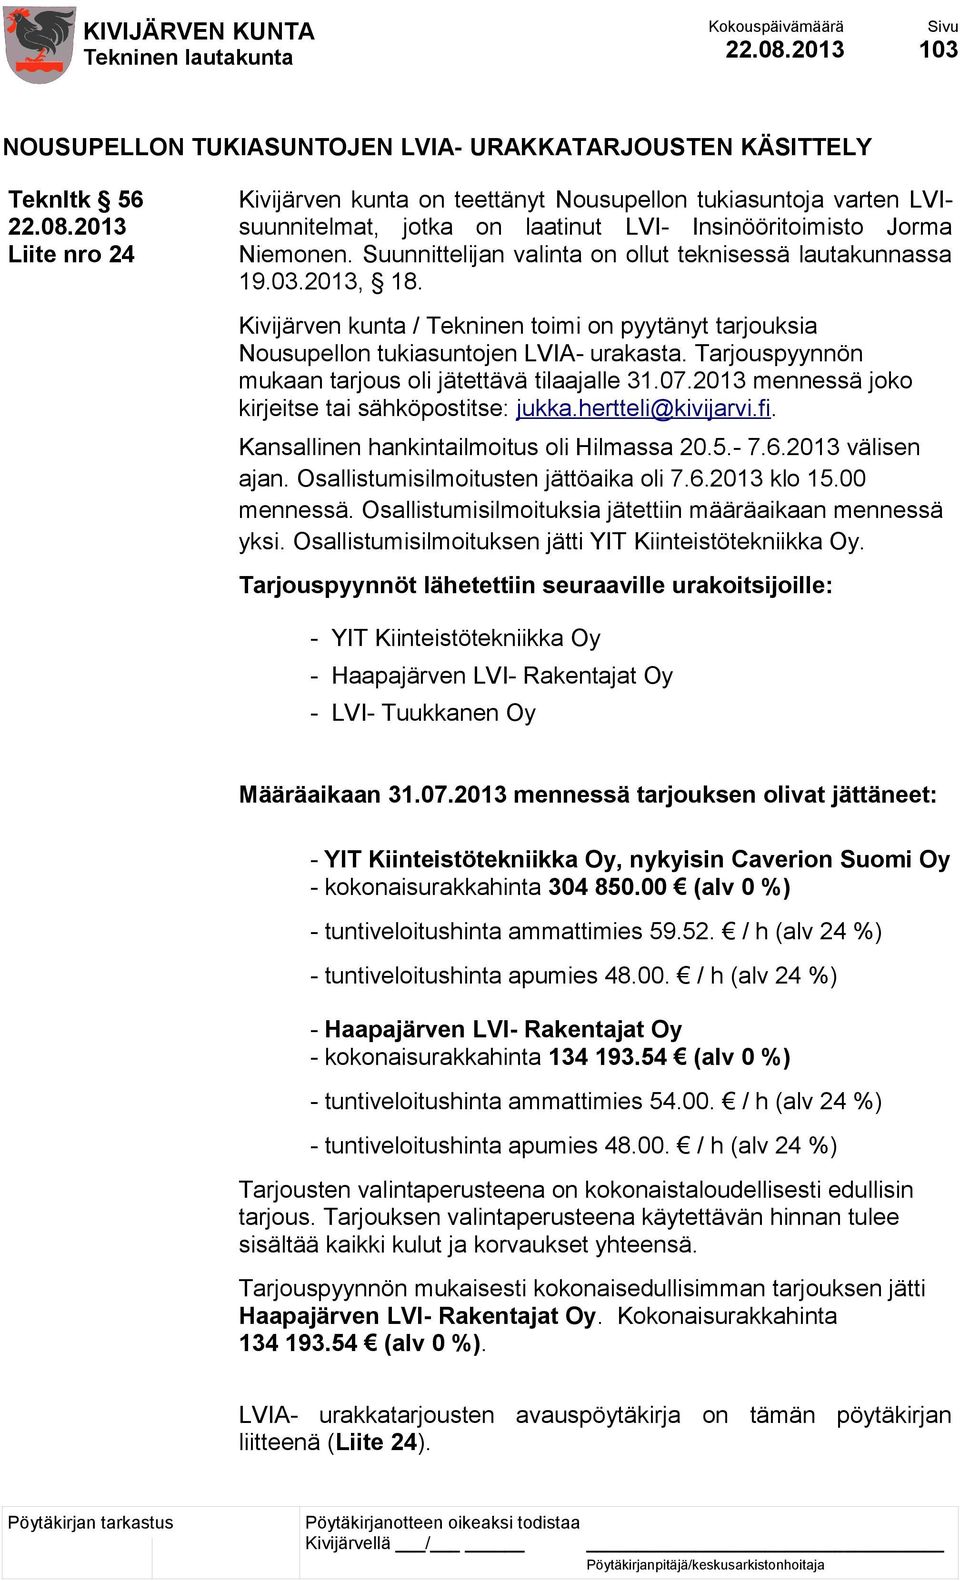 Kivijärven kunta / Tekninen toimi on pyytänyt tarjouksia Nousupellon tukiasuntojen LVIA- urakasta. Tarjouspyynnön mukaan tarjous oli jätettävä tilaajalle 31.07.